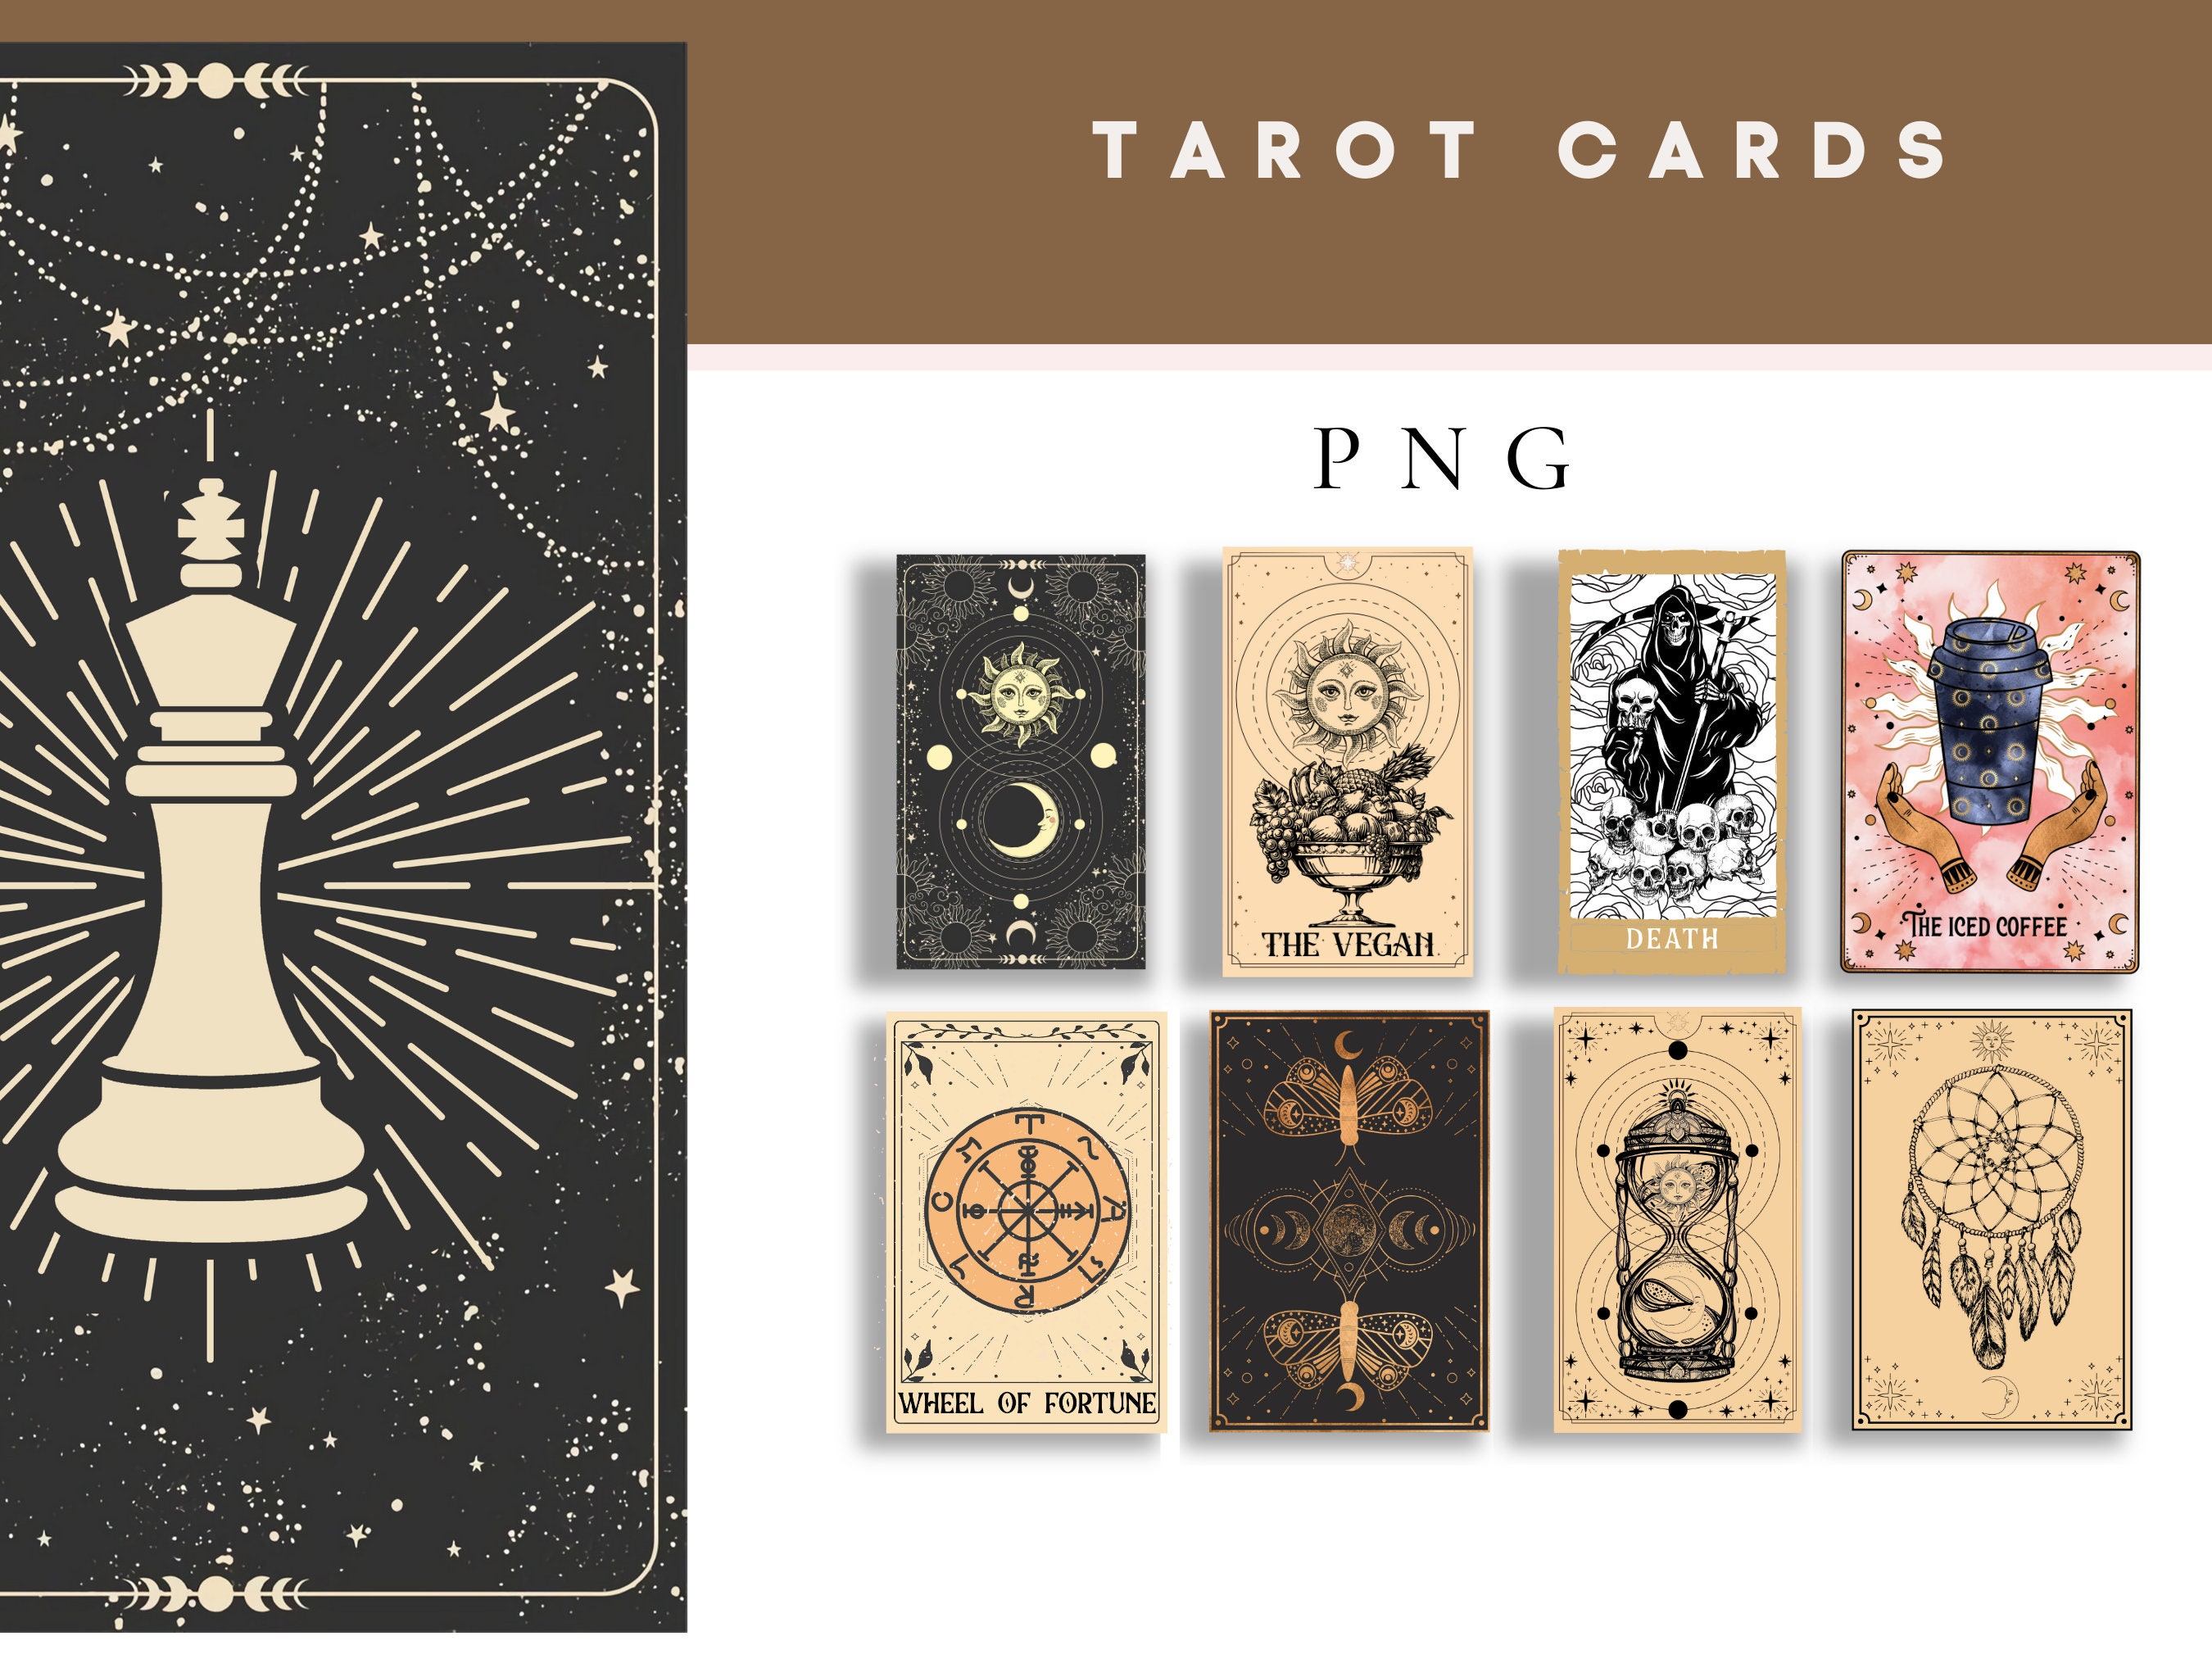 Undated Digital Tarot Journal, Tarot Planner, Tarot Card Workbook